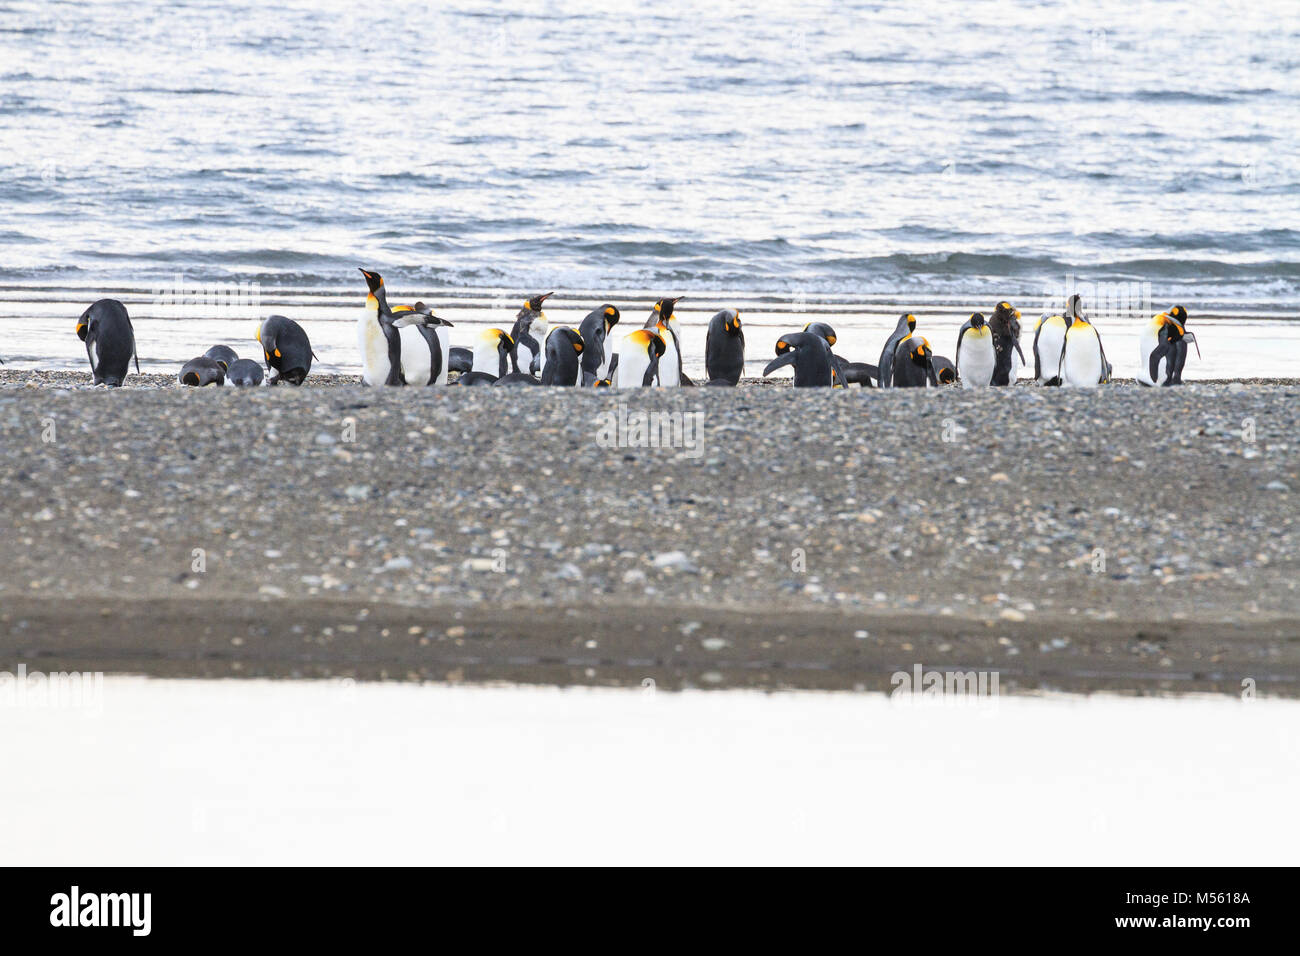 Une colonie de manchots royaux (Aptenodytes patagonicus) reposant sur la plage à Parque Pinguino Rey, La Terre de Feu Patagonie, Chili Banque D'Images